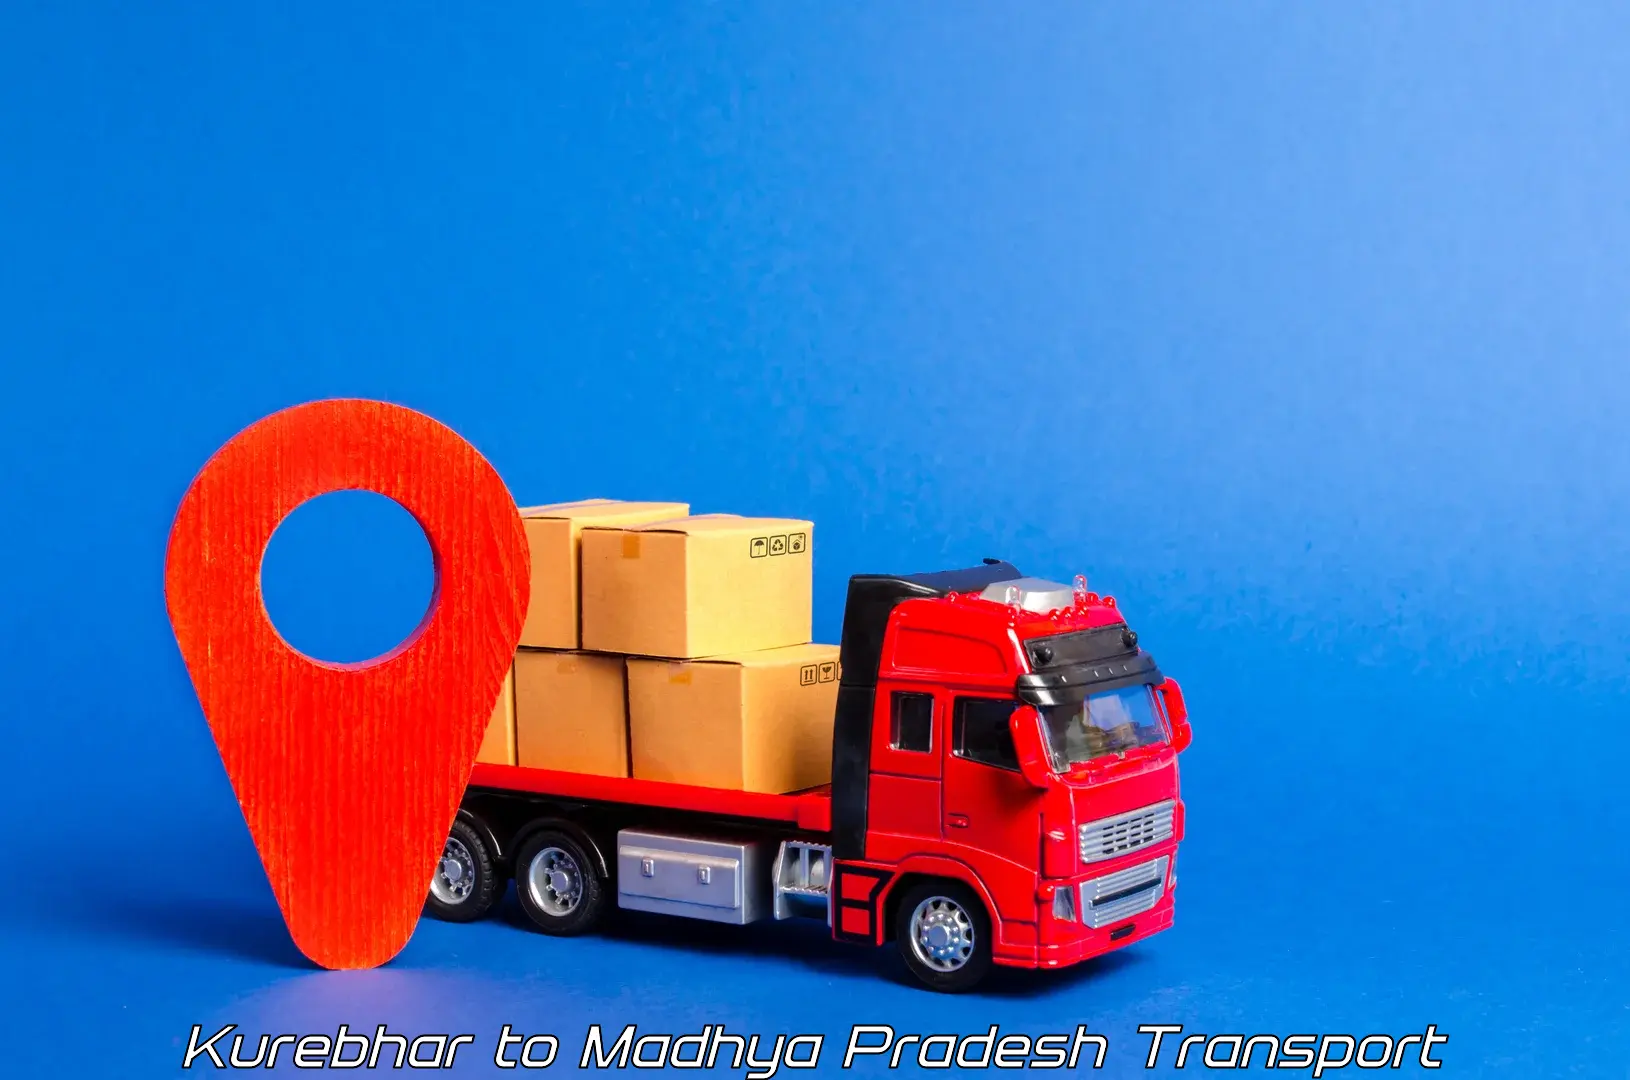 Cargo transport services Kurebhar to Bargawan